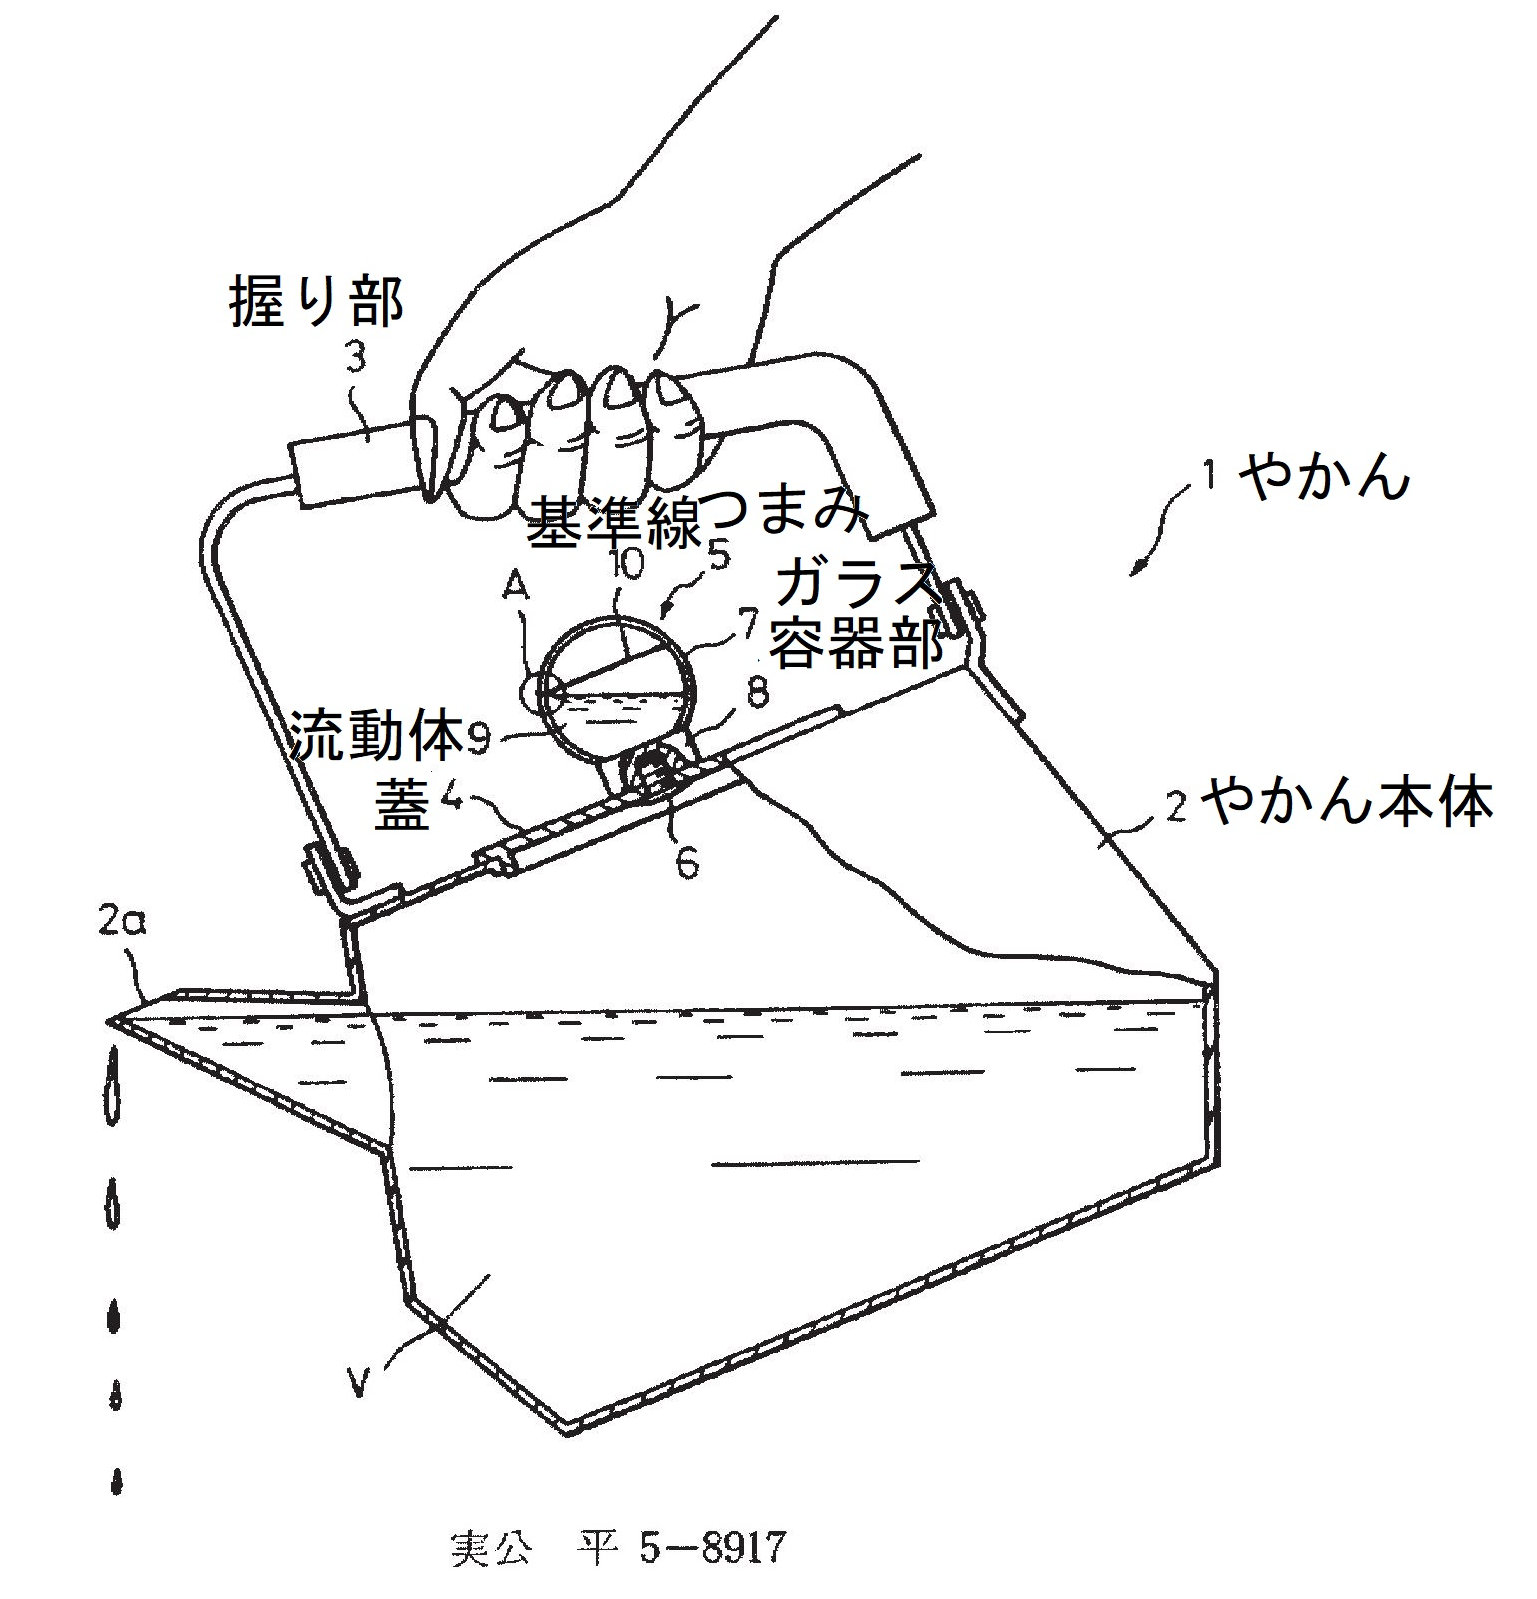 特許・実用新案の例：やかんの簡易水量表示具